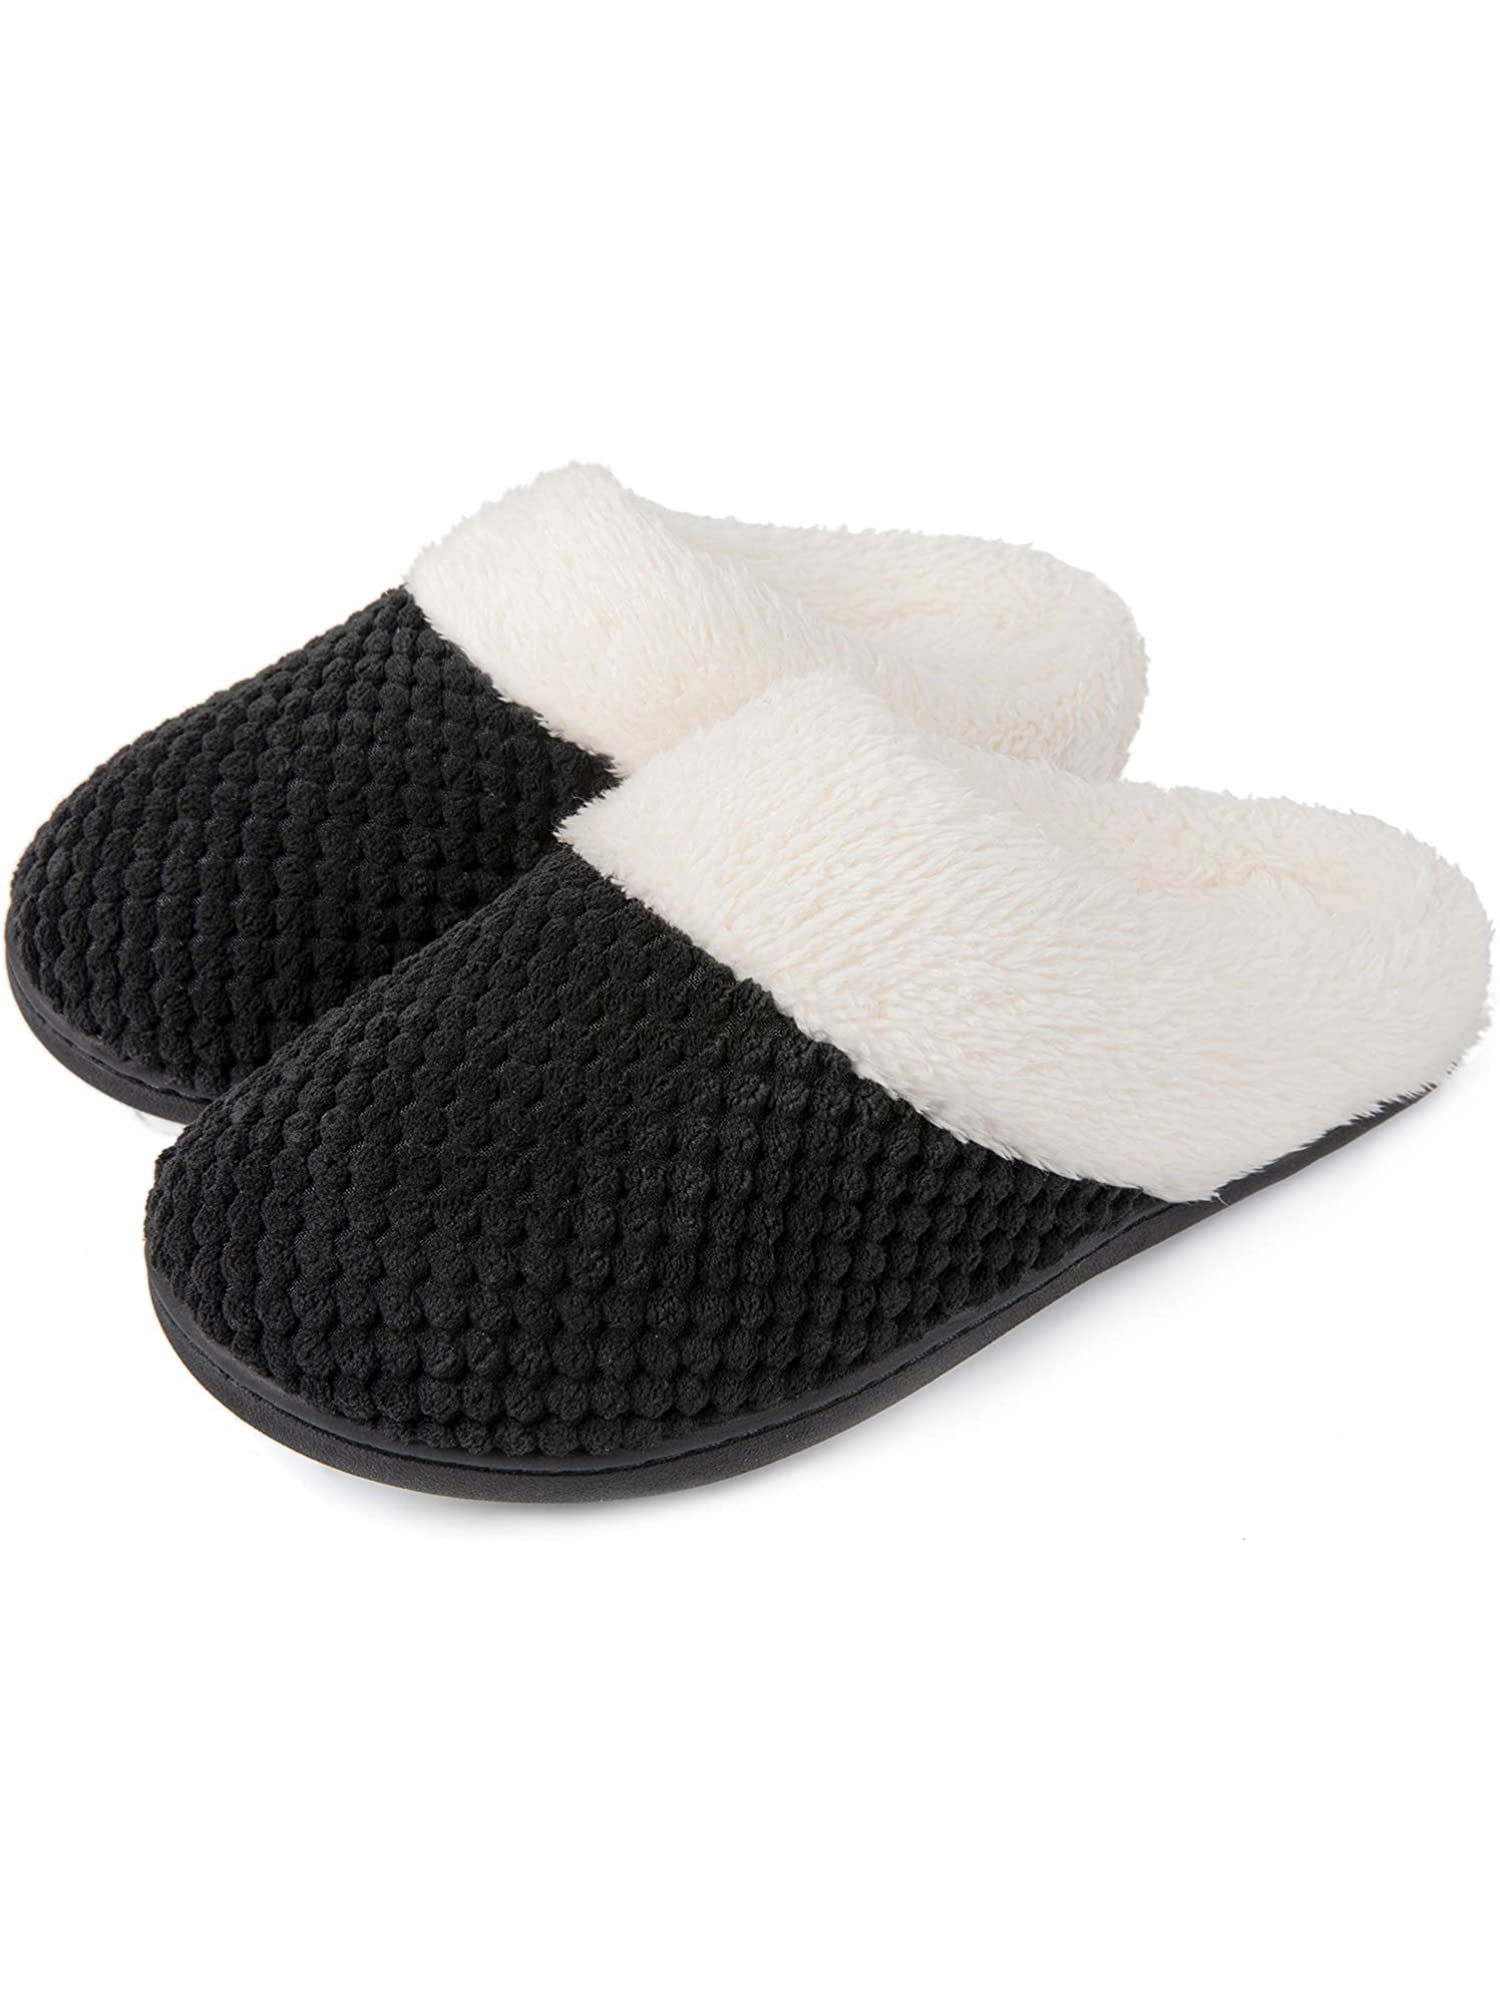 memory foam slippers for women